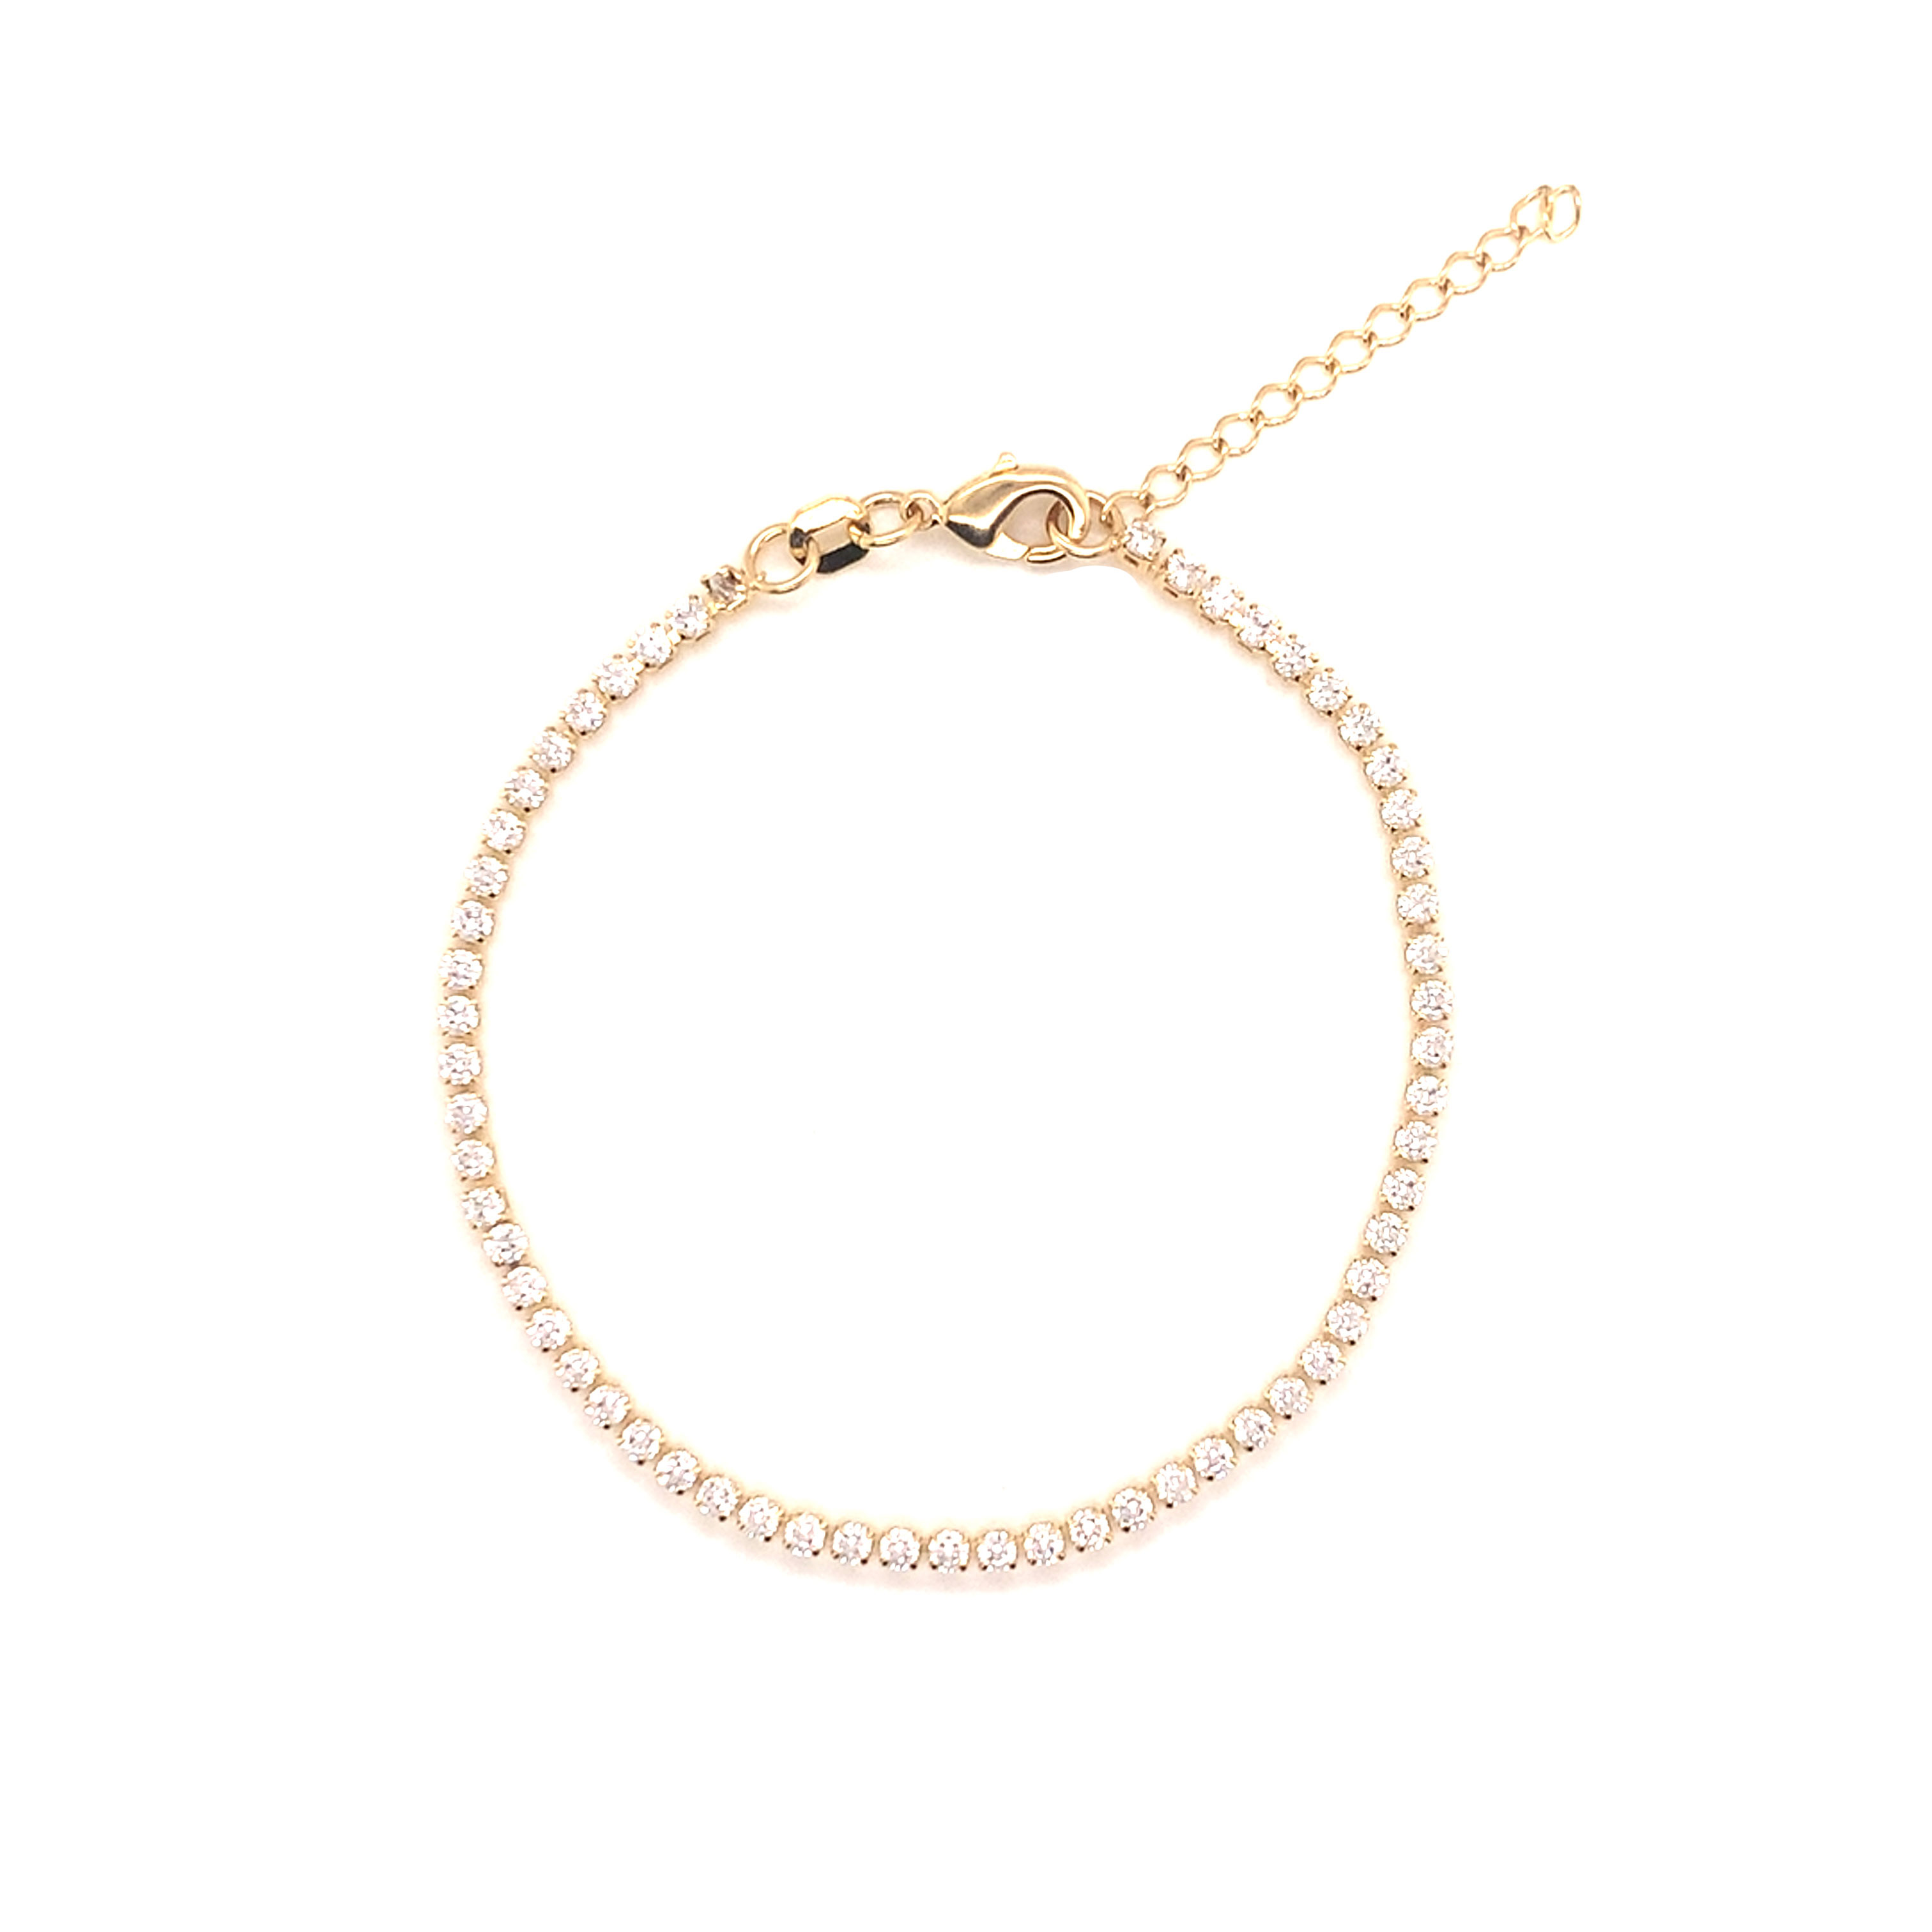 Tennis Bracelet - 6.5" + 1" Extension - Gold Filled